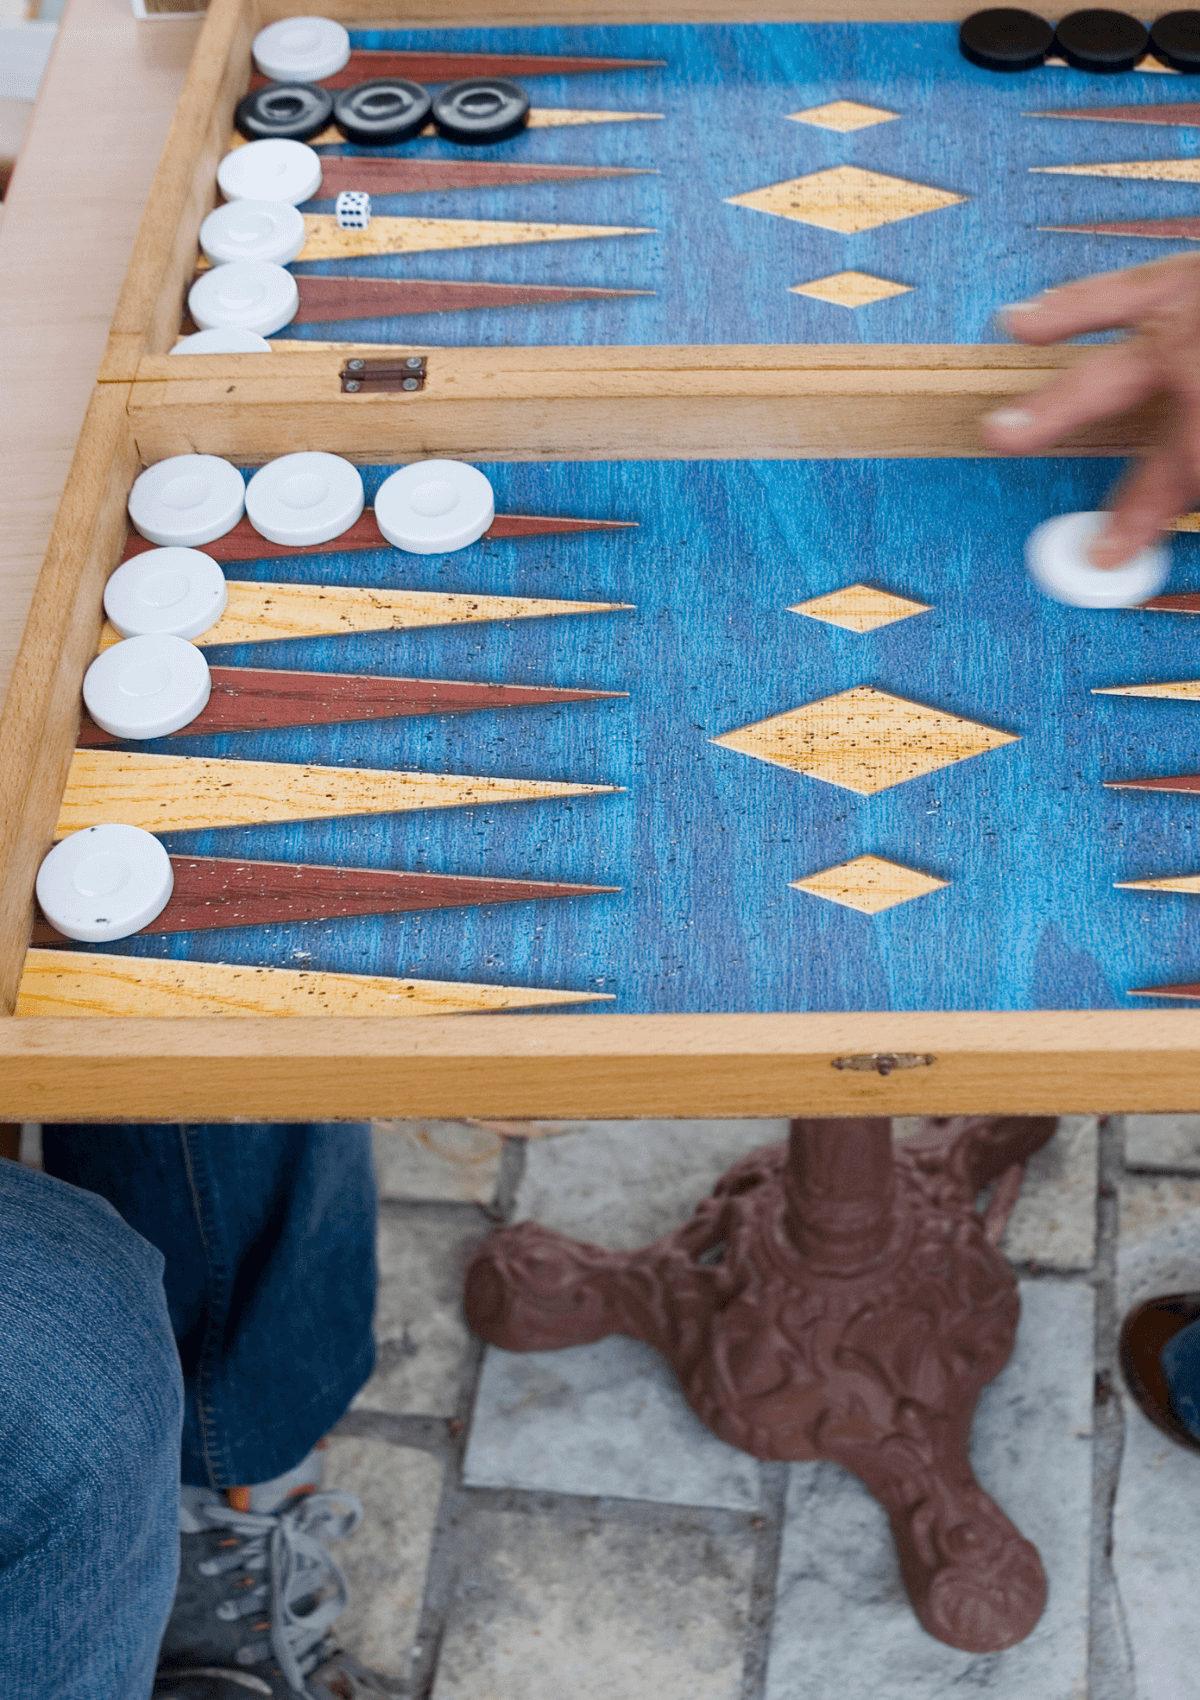 Backgammon in Greece is a popular souvenir